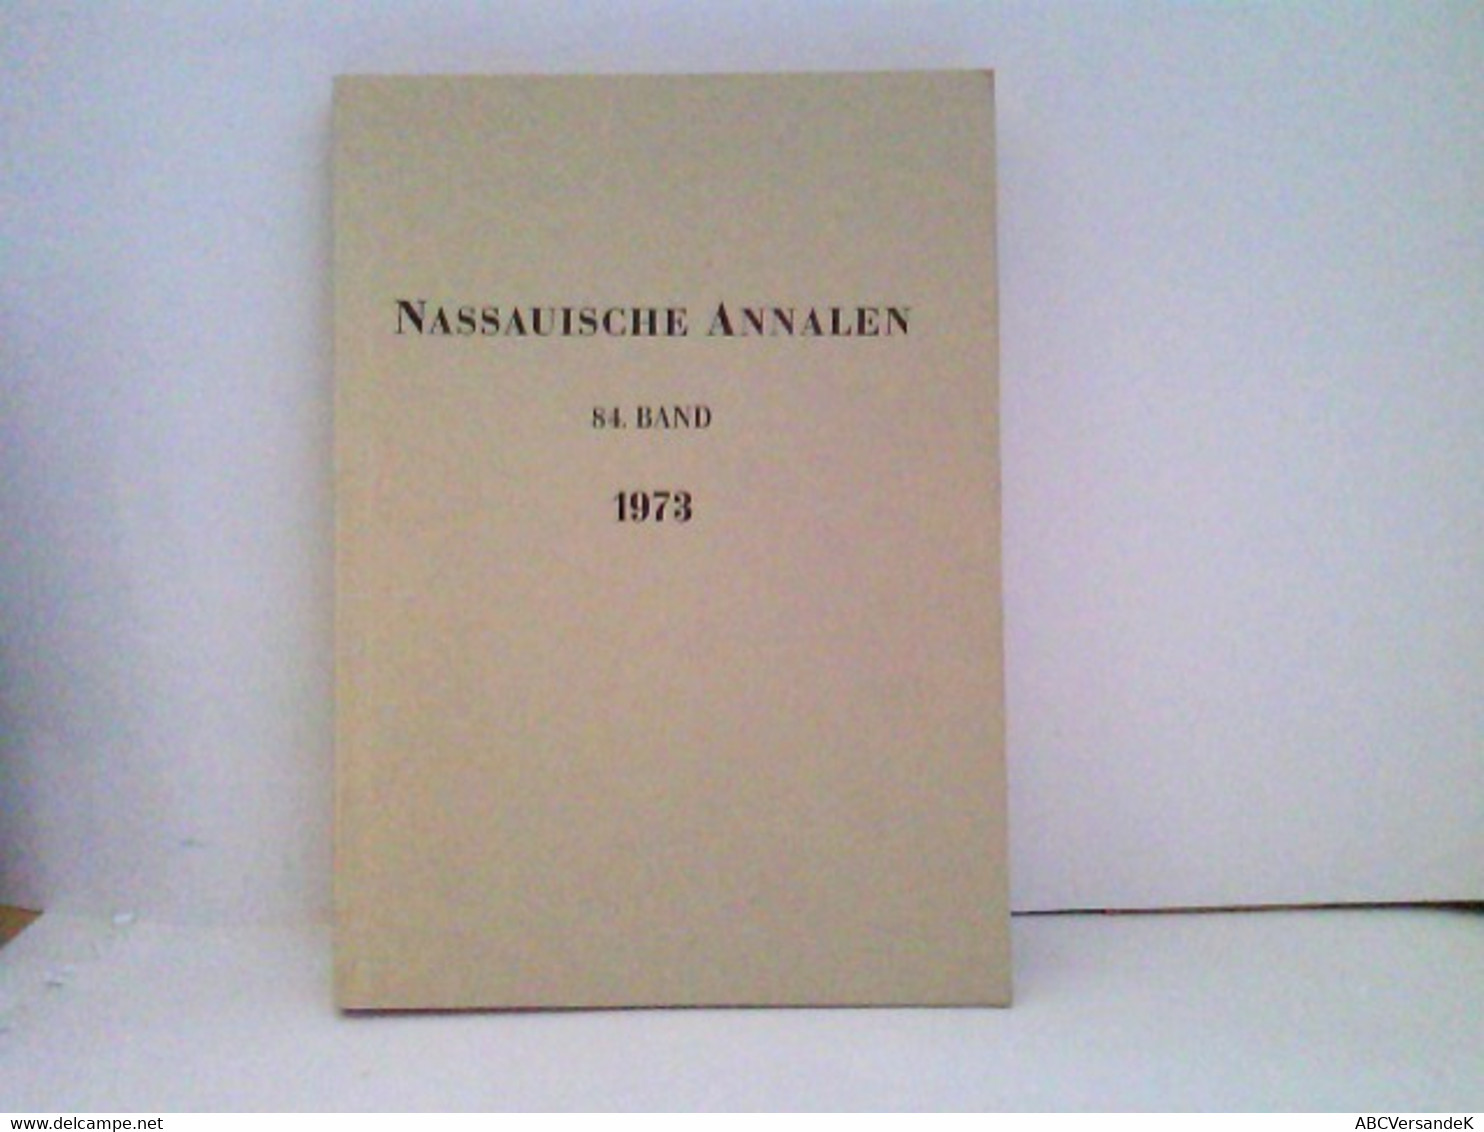 Nassauische Annalen 84.Band 1973 - Hesse